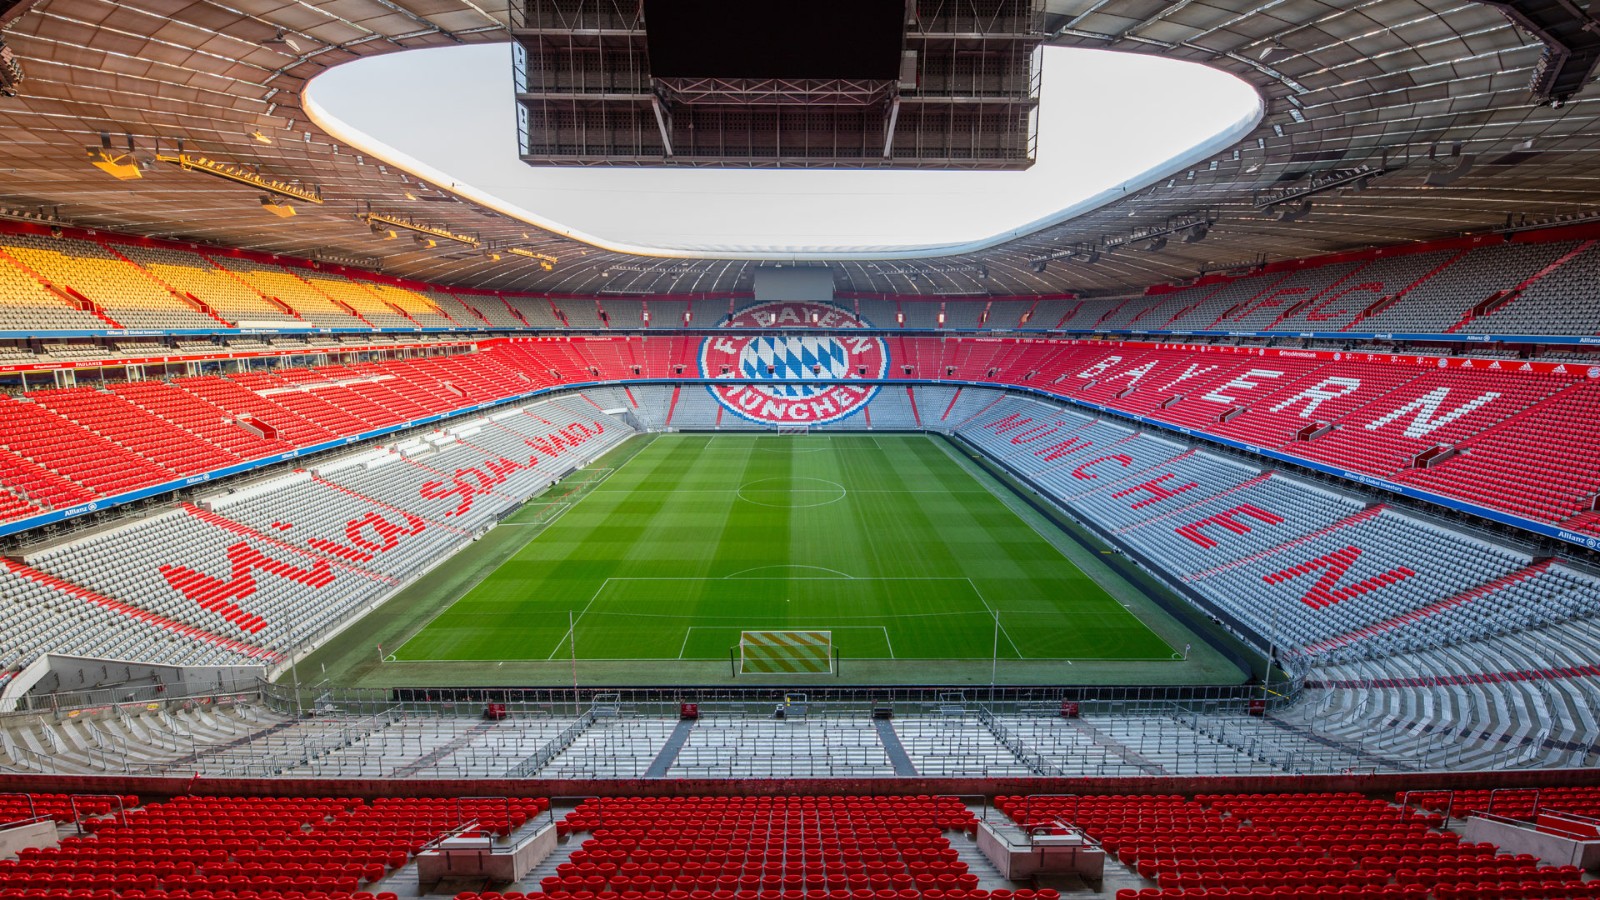 2022安联球场玩乐攻略,慕尼黑安联体育场是欧洲最现...【去哪儿攻略】